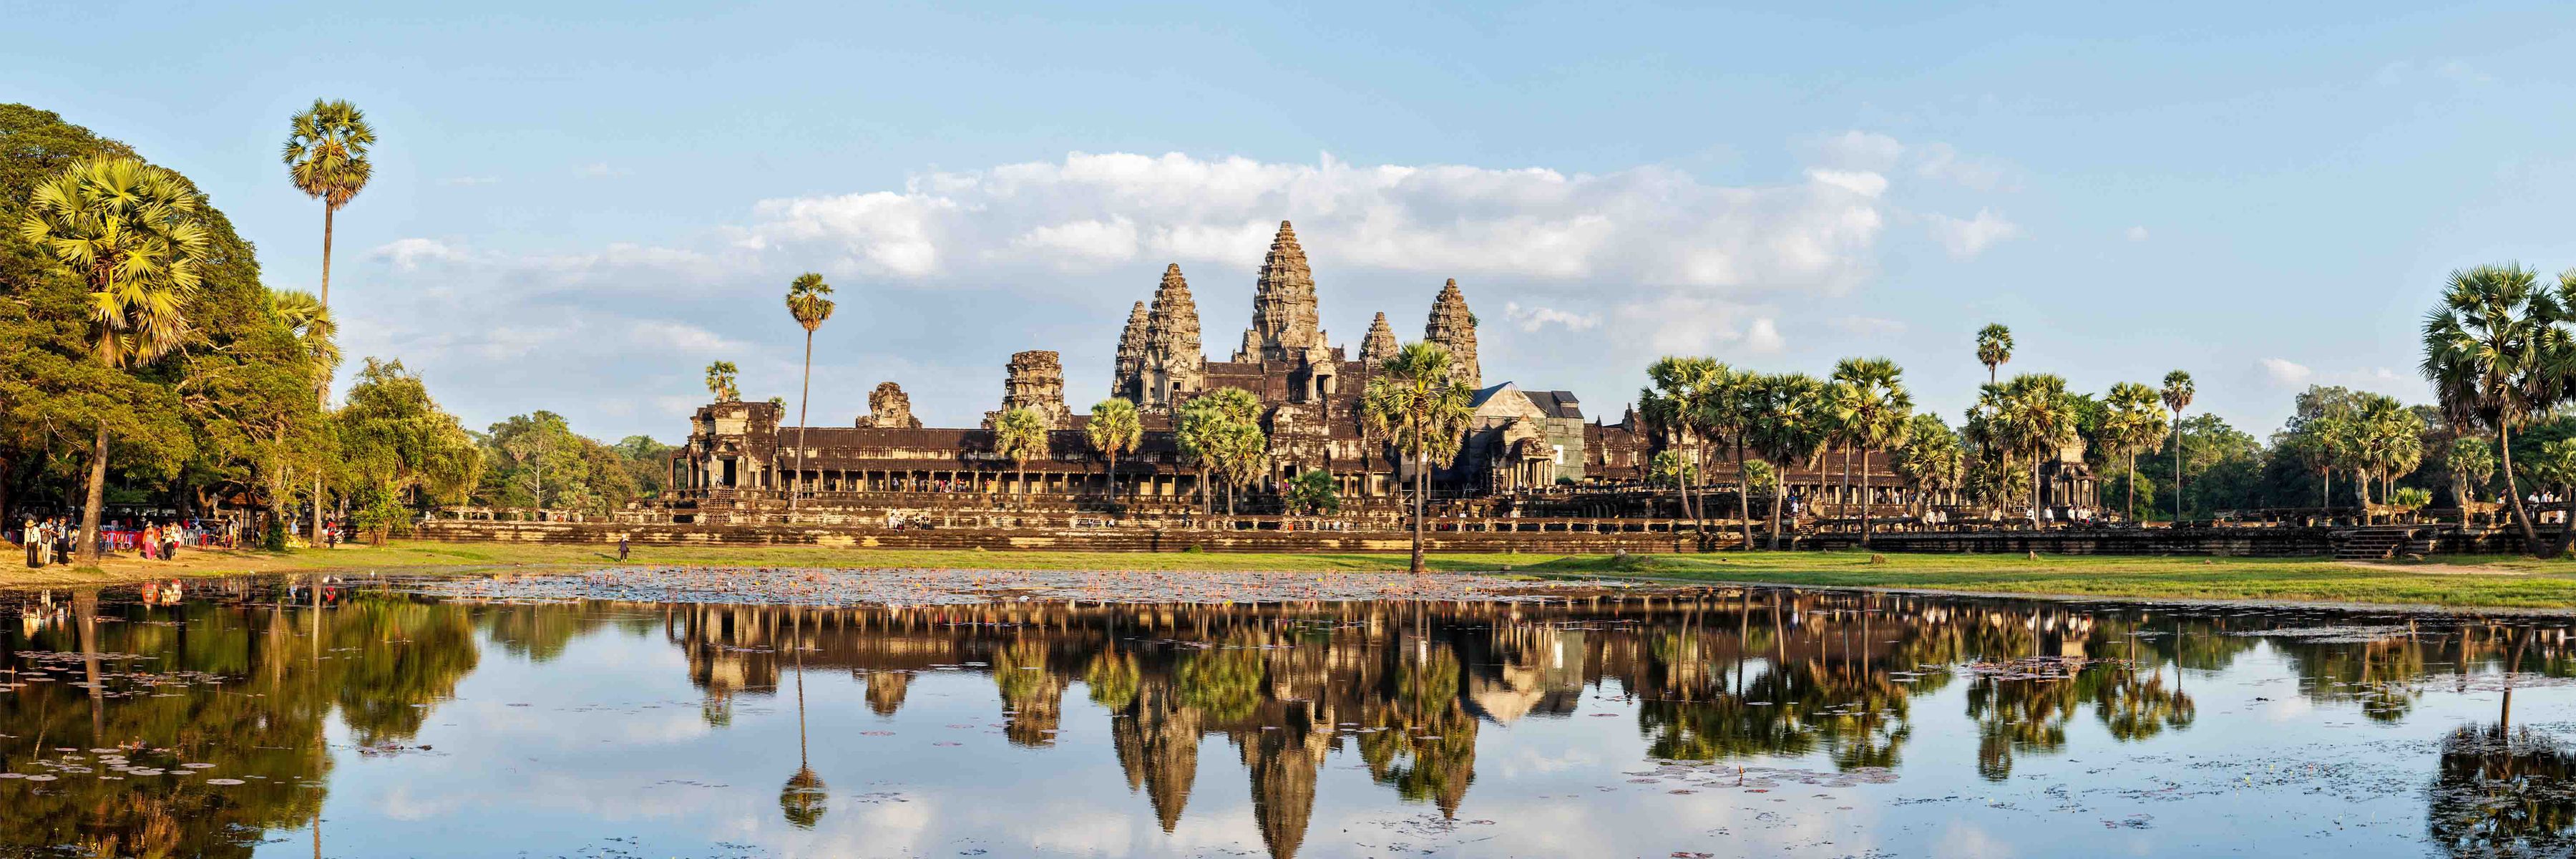 Kambodscha Thailand Reise: Eindrucksvolle Tempel & sanfte Dickhäuter